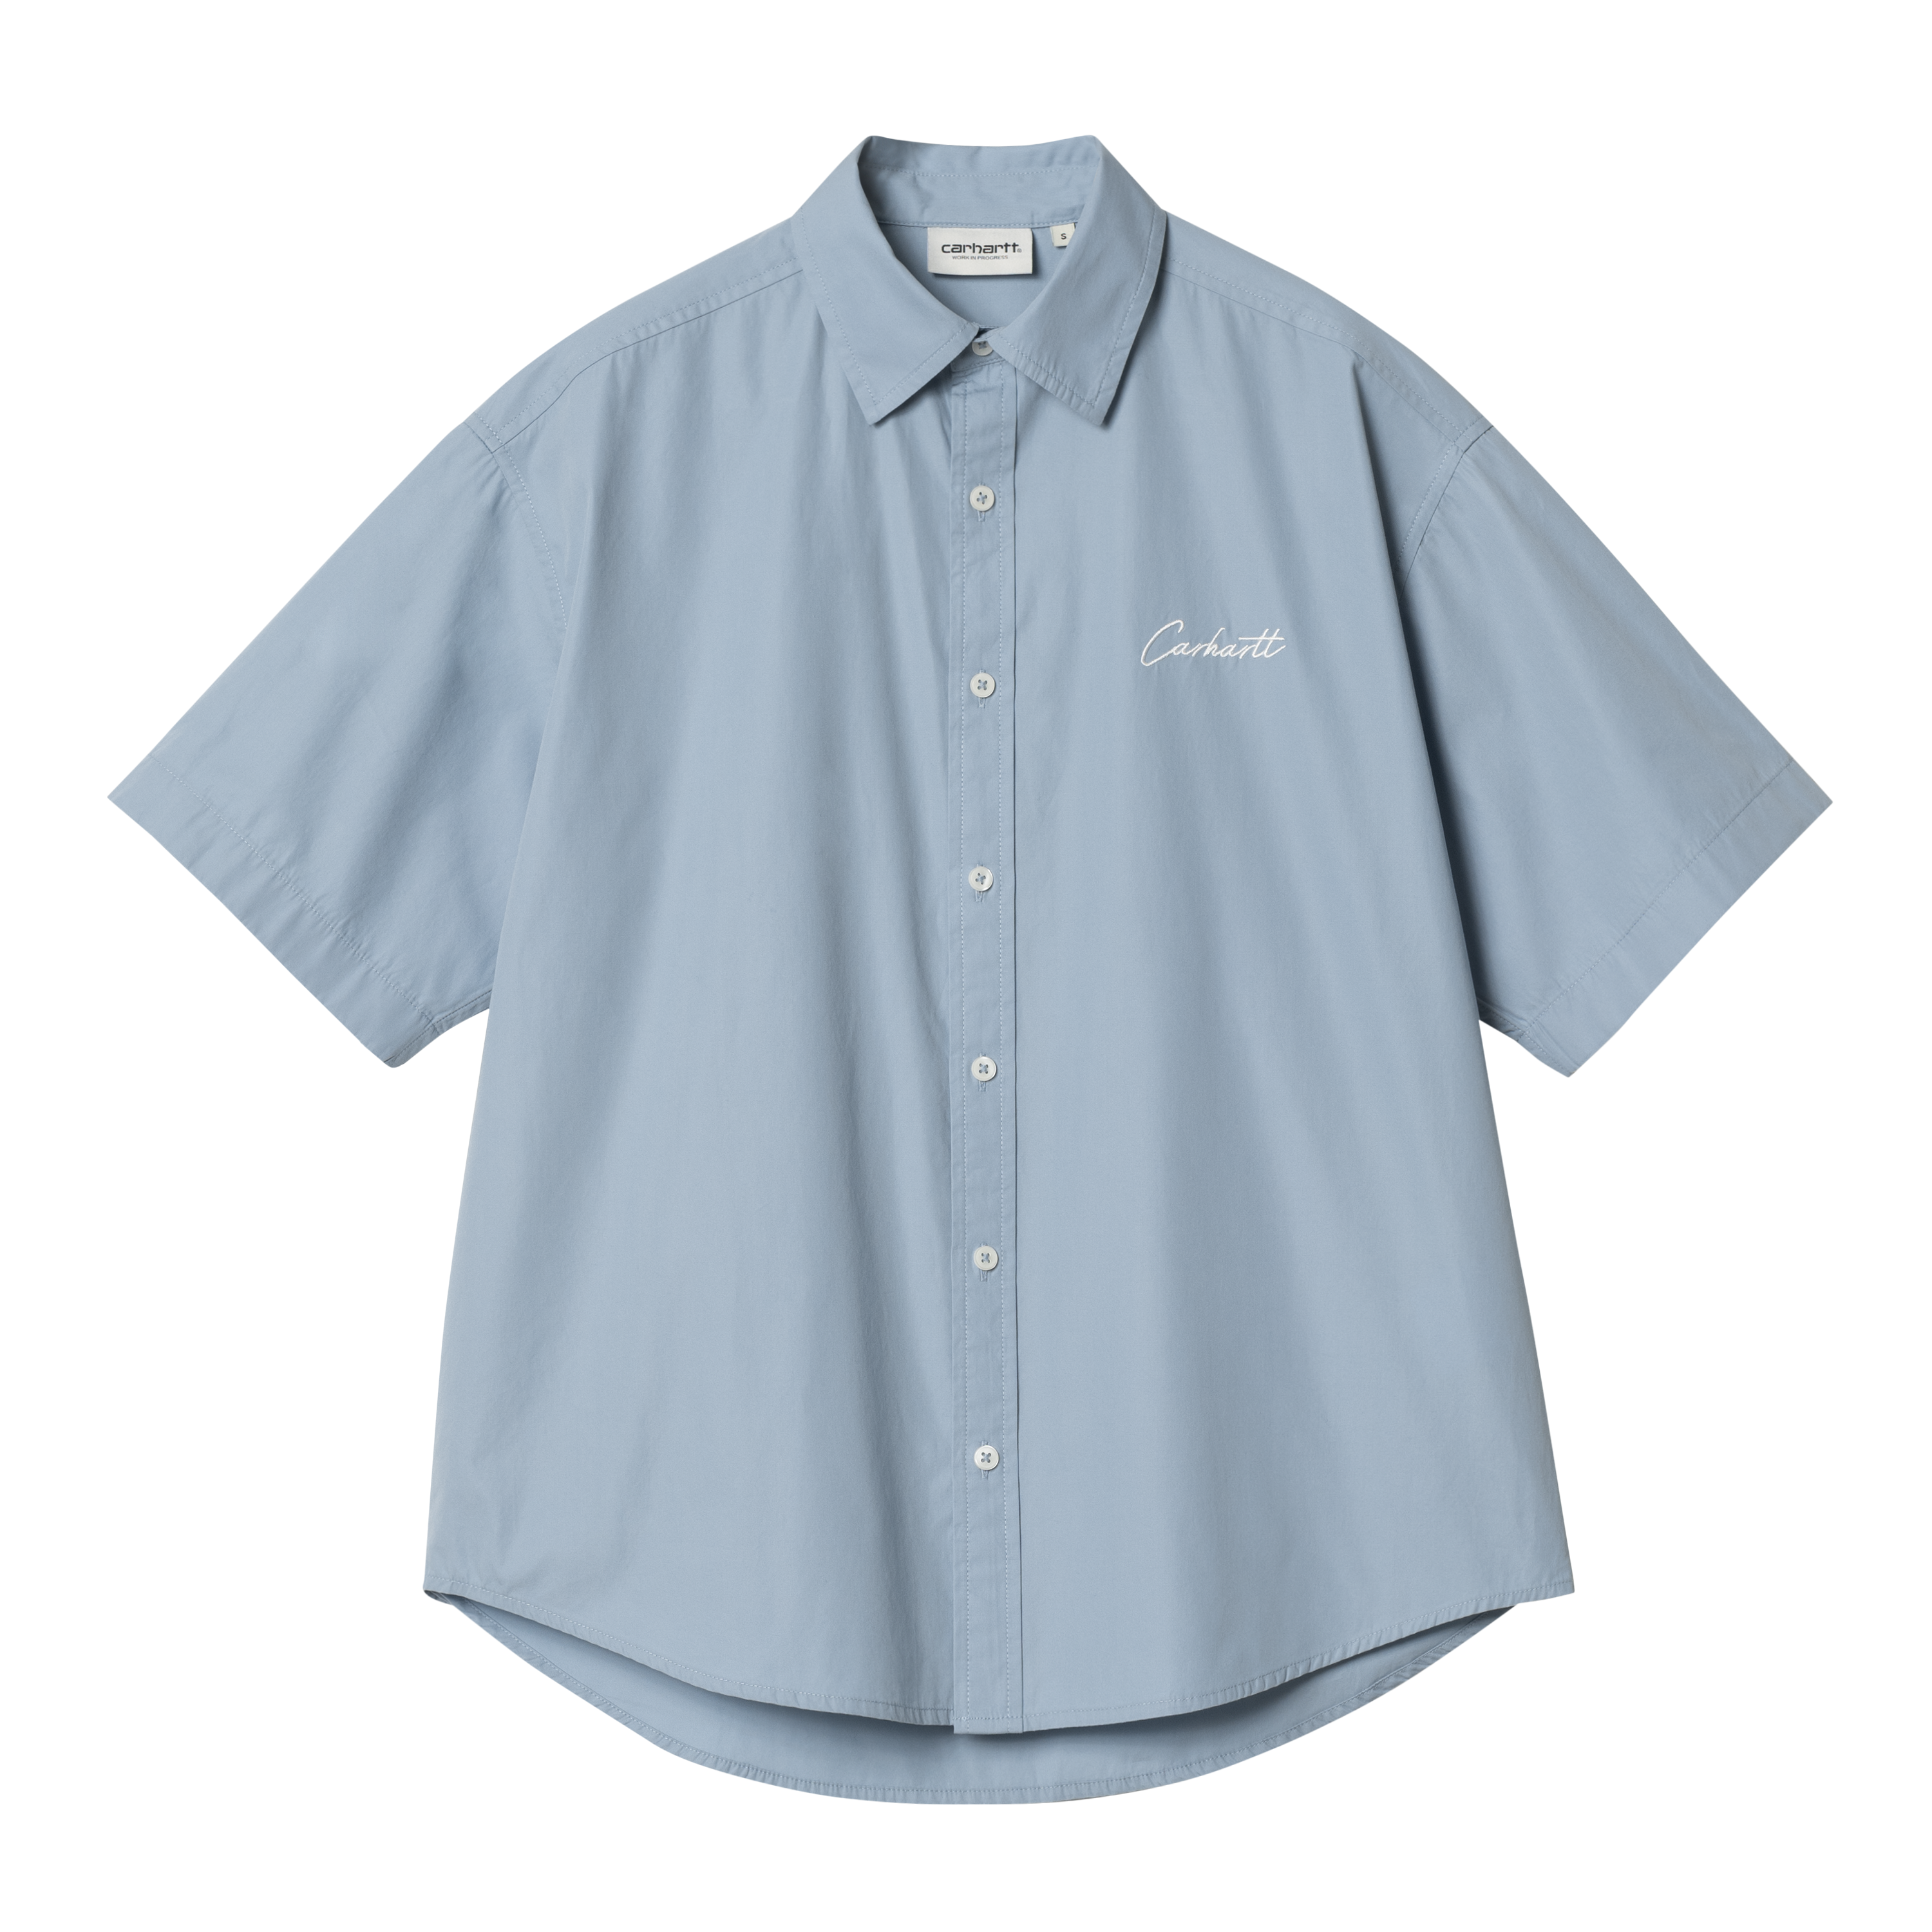 Carhartt WIP Women’s Short Sleeve Jaxon Shirt en Azul